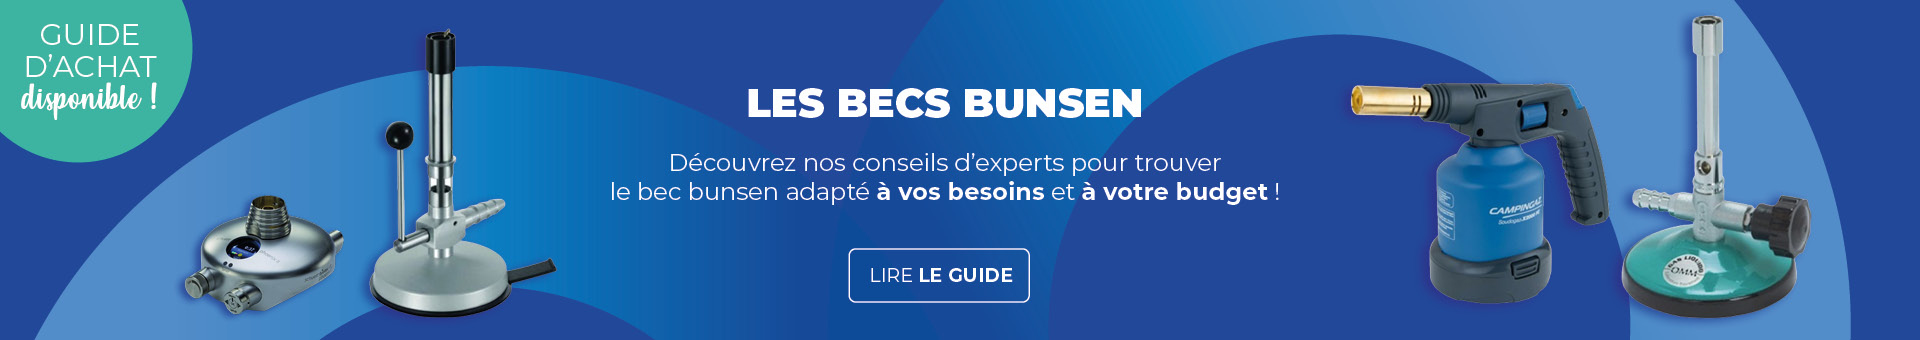 Guide d'achat Becs Bunsen